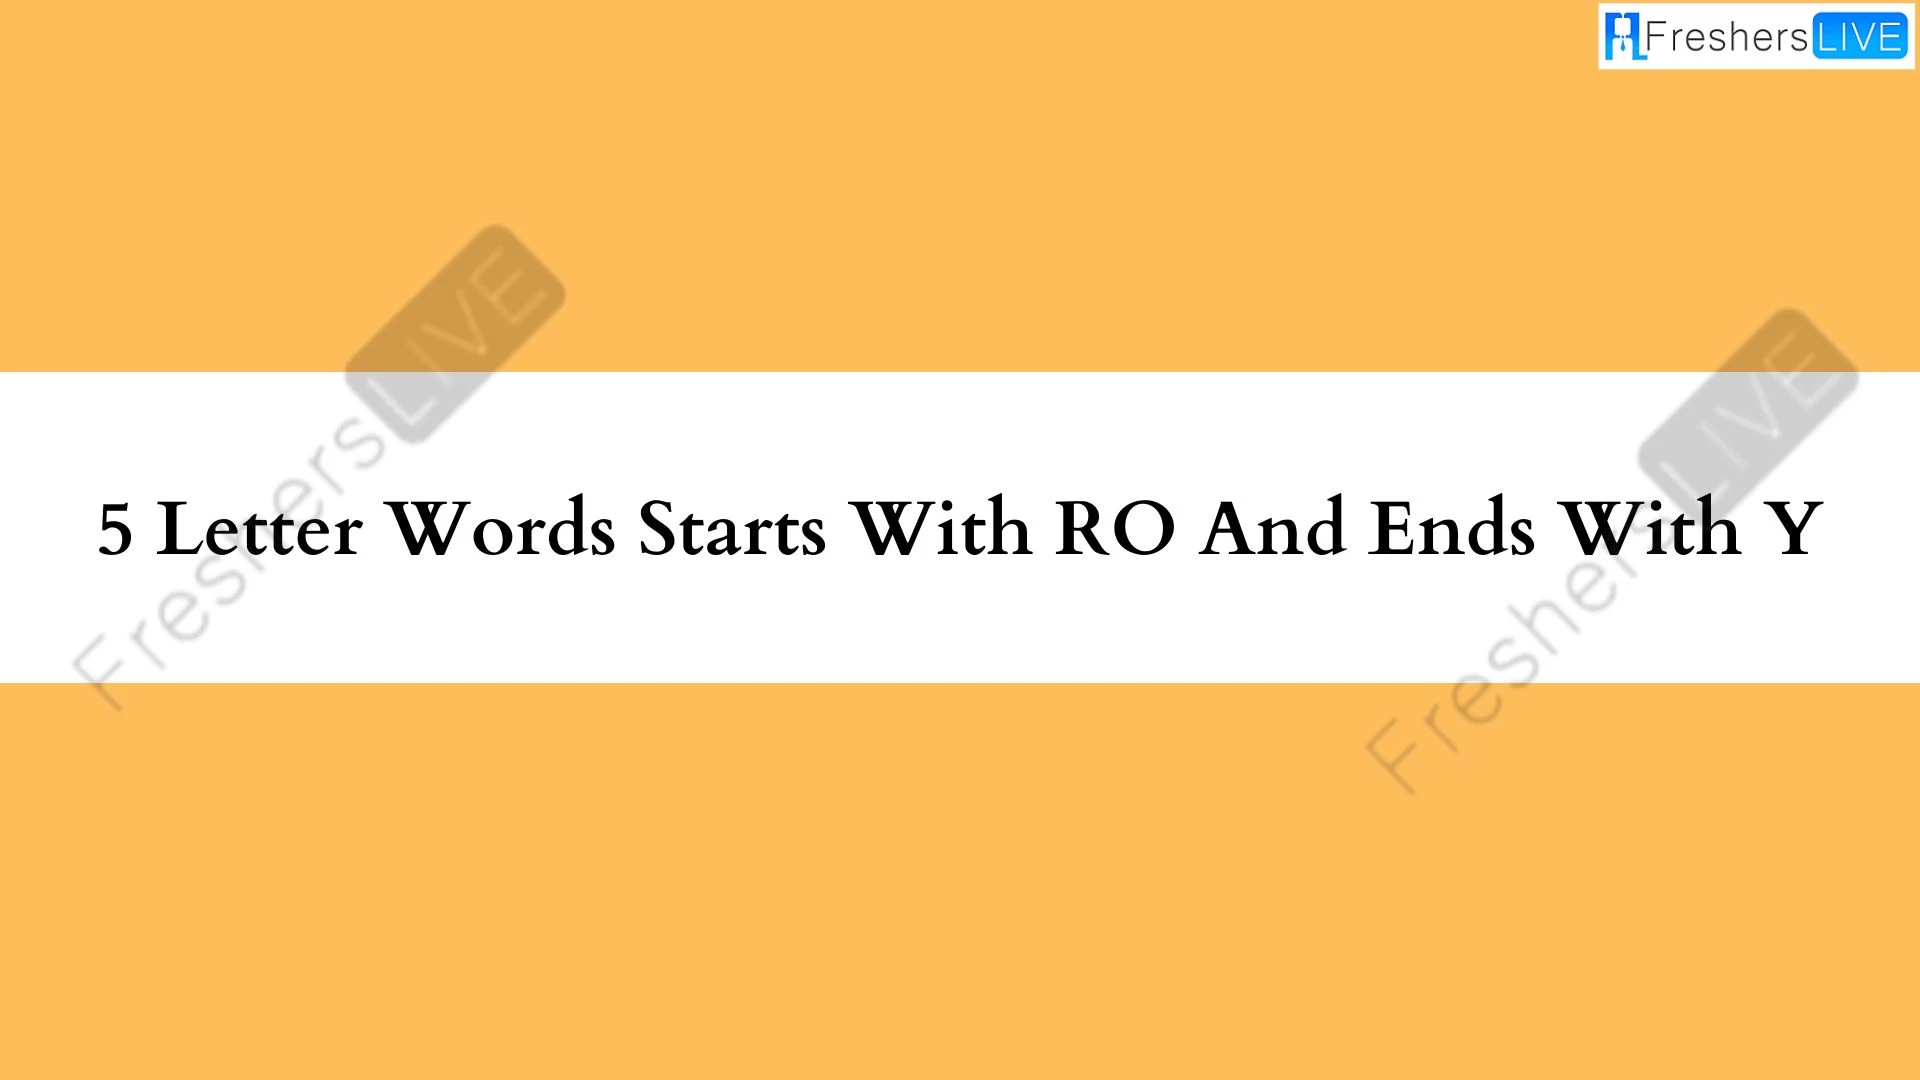 5 - Palabras formadas por letras que empiezan con PO y terminan con Y. Lista de todas las palabras.